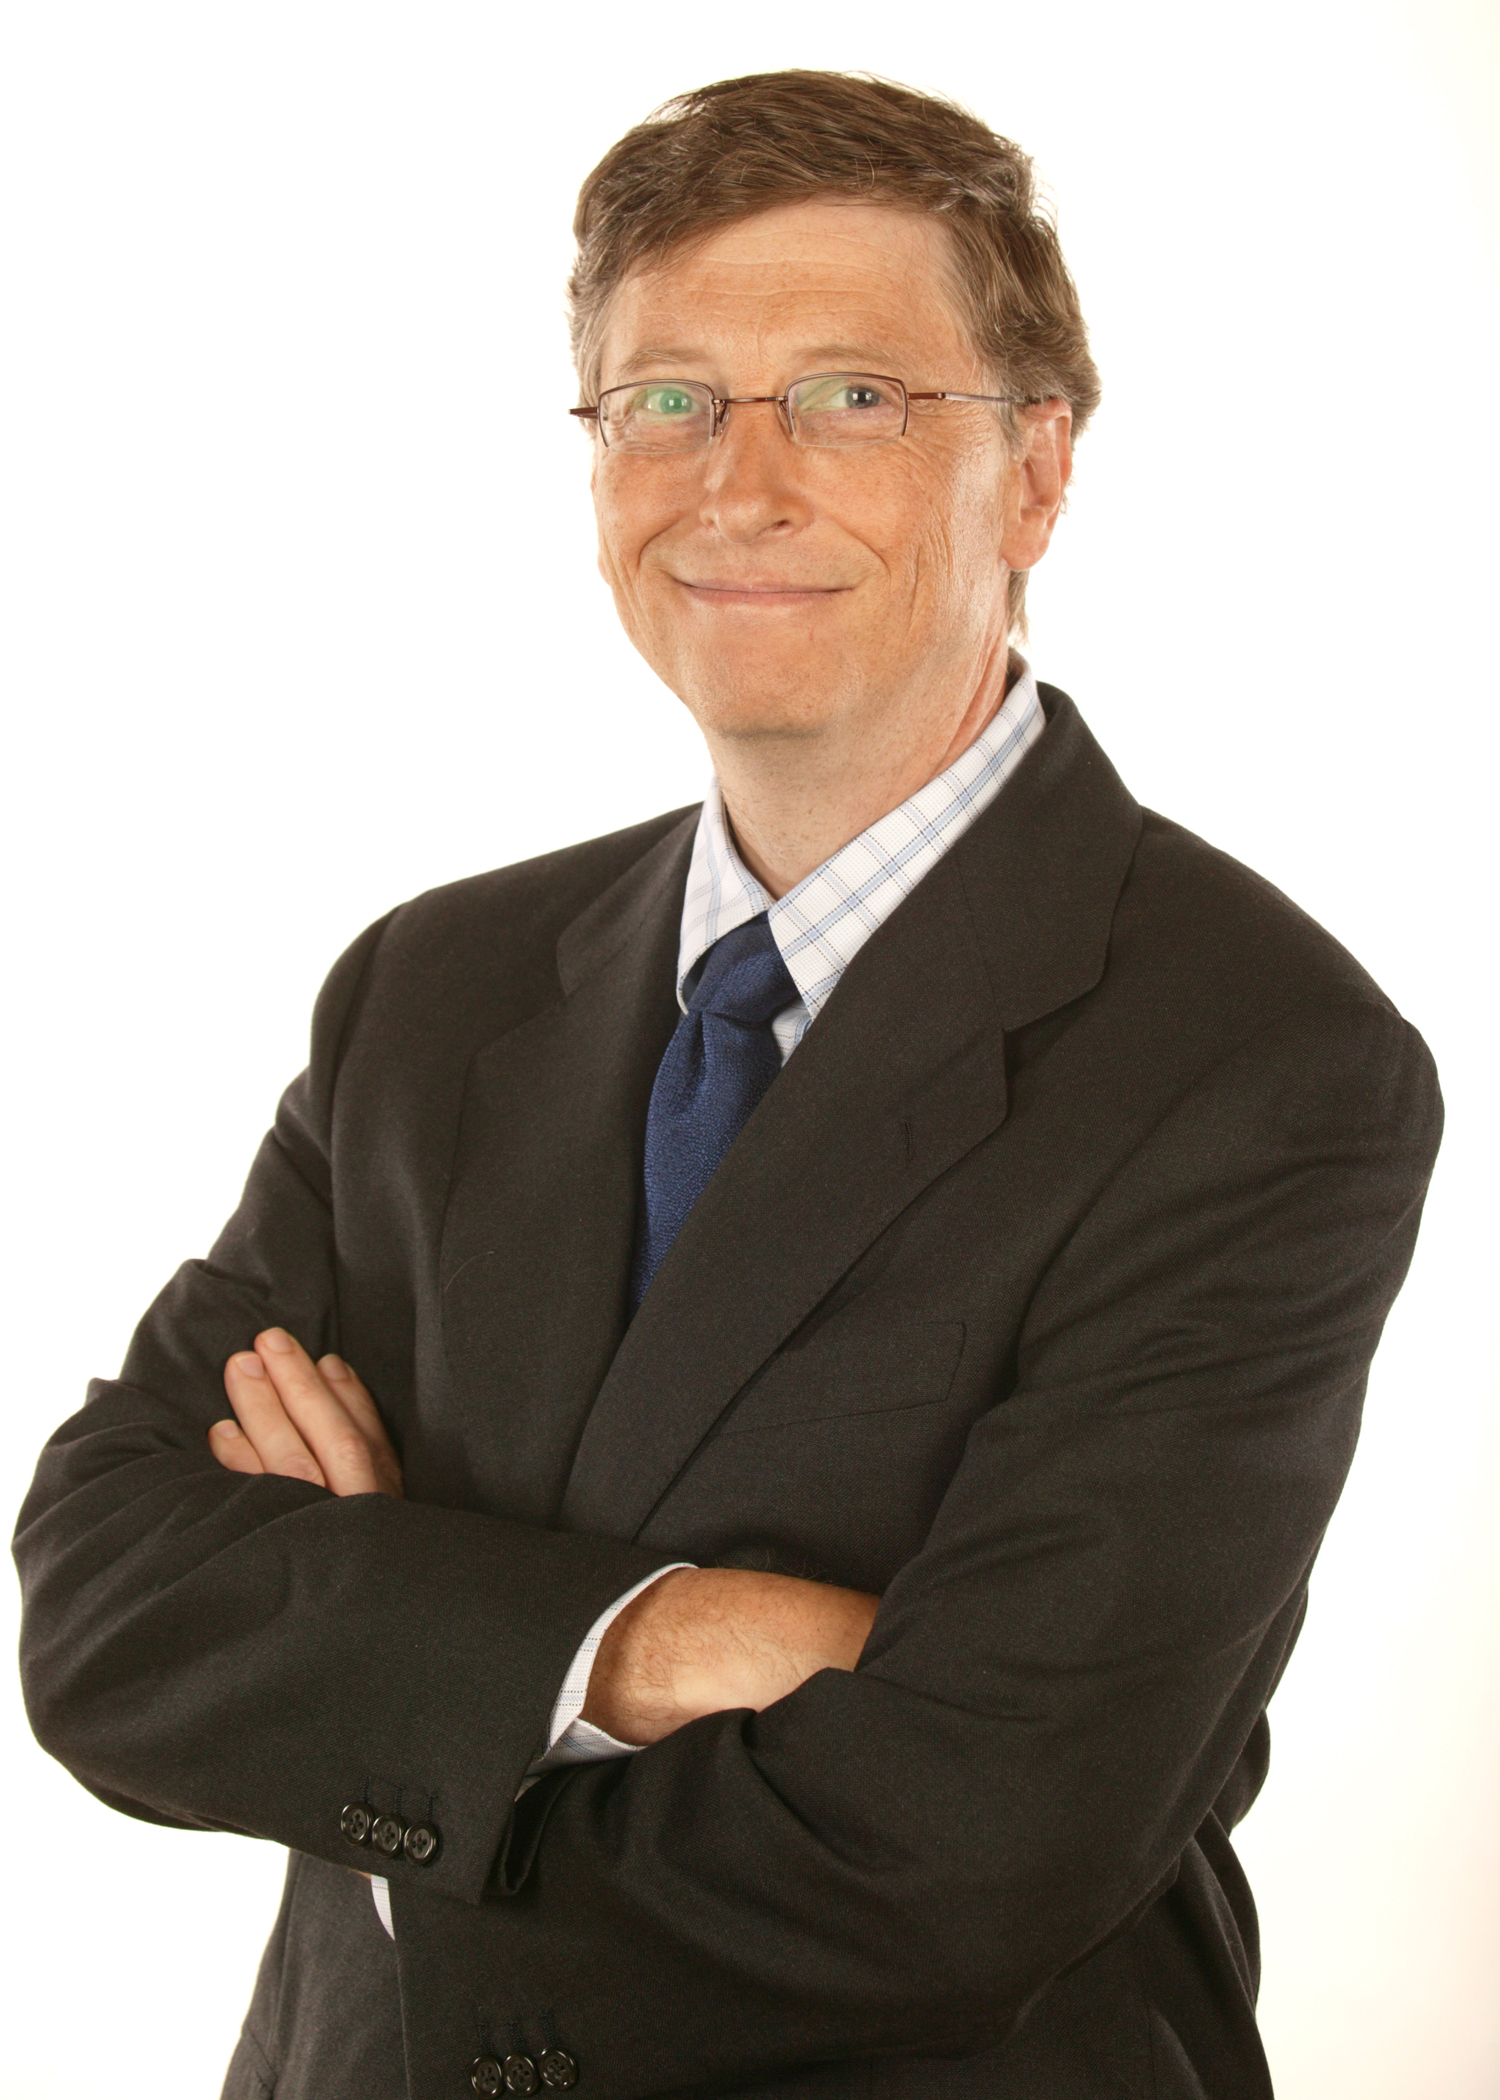 Bill Gates Profile